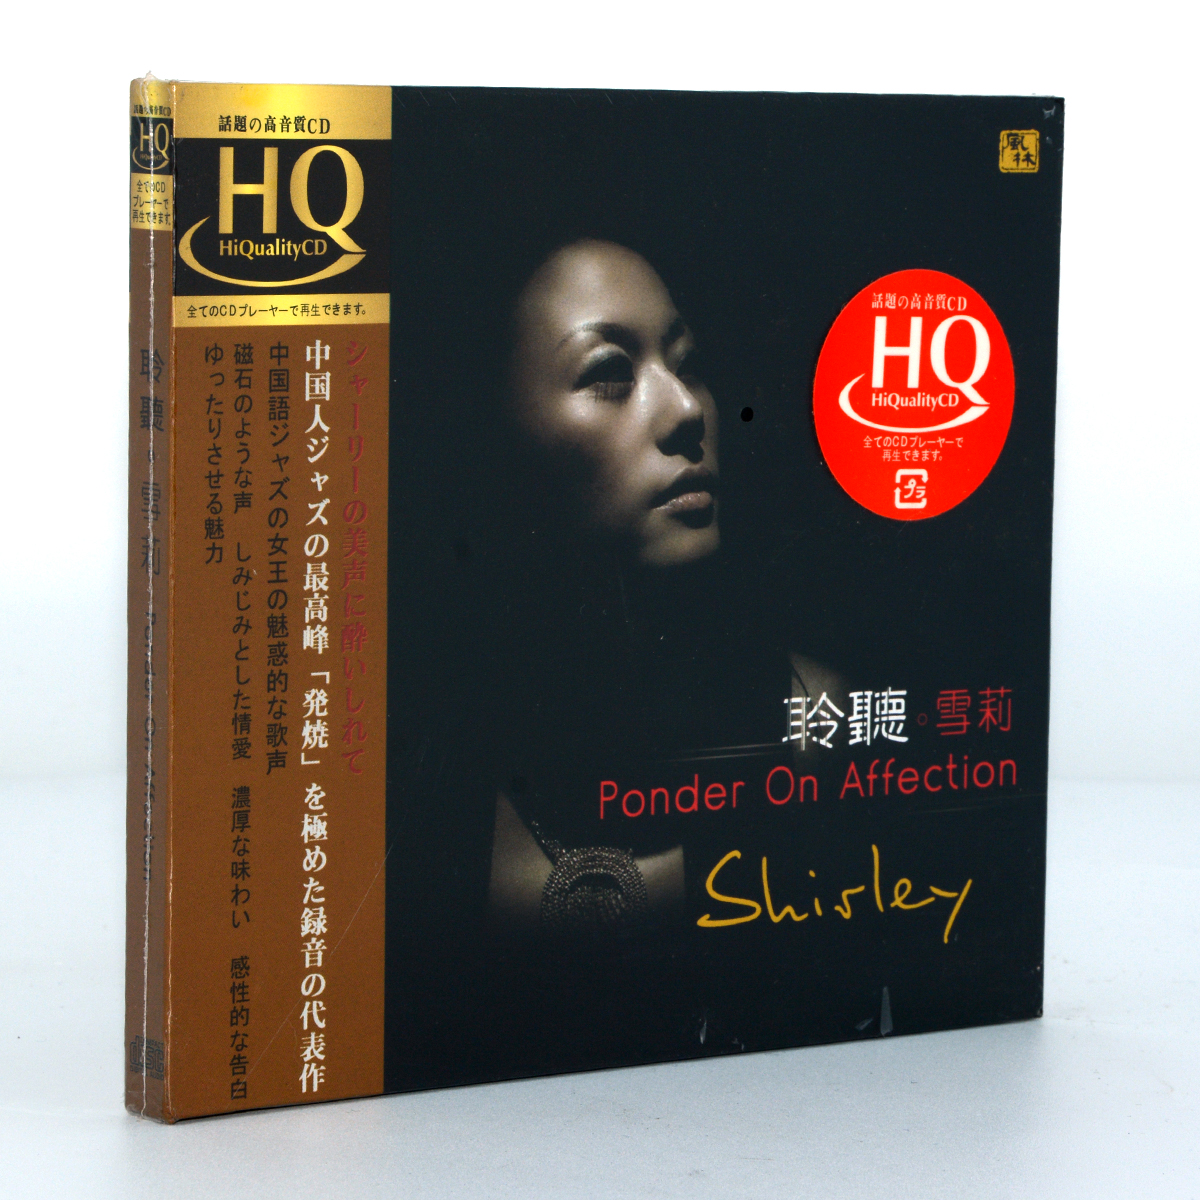 高品质正版发烧碟CD 风林唱片聆听雪莉HQCD1CD爵士乐浪漫爵士风格